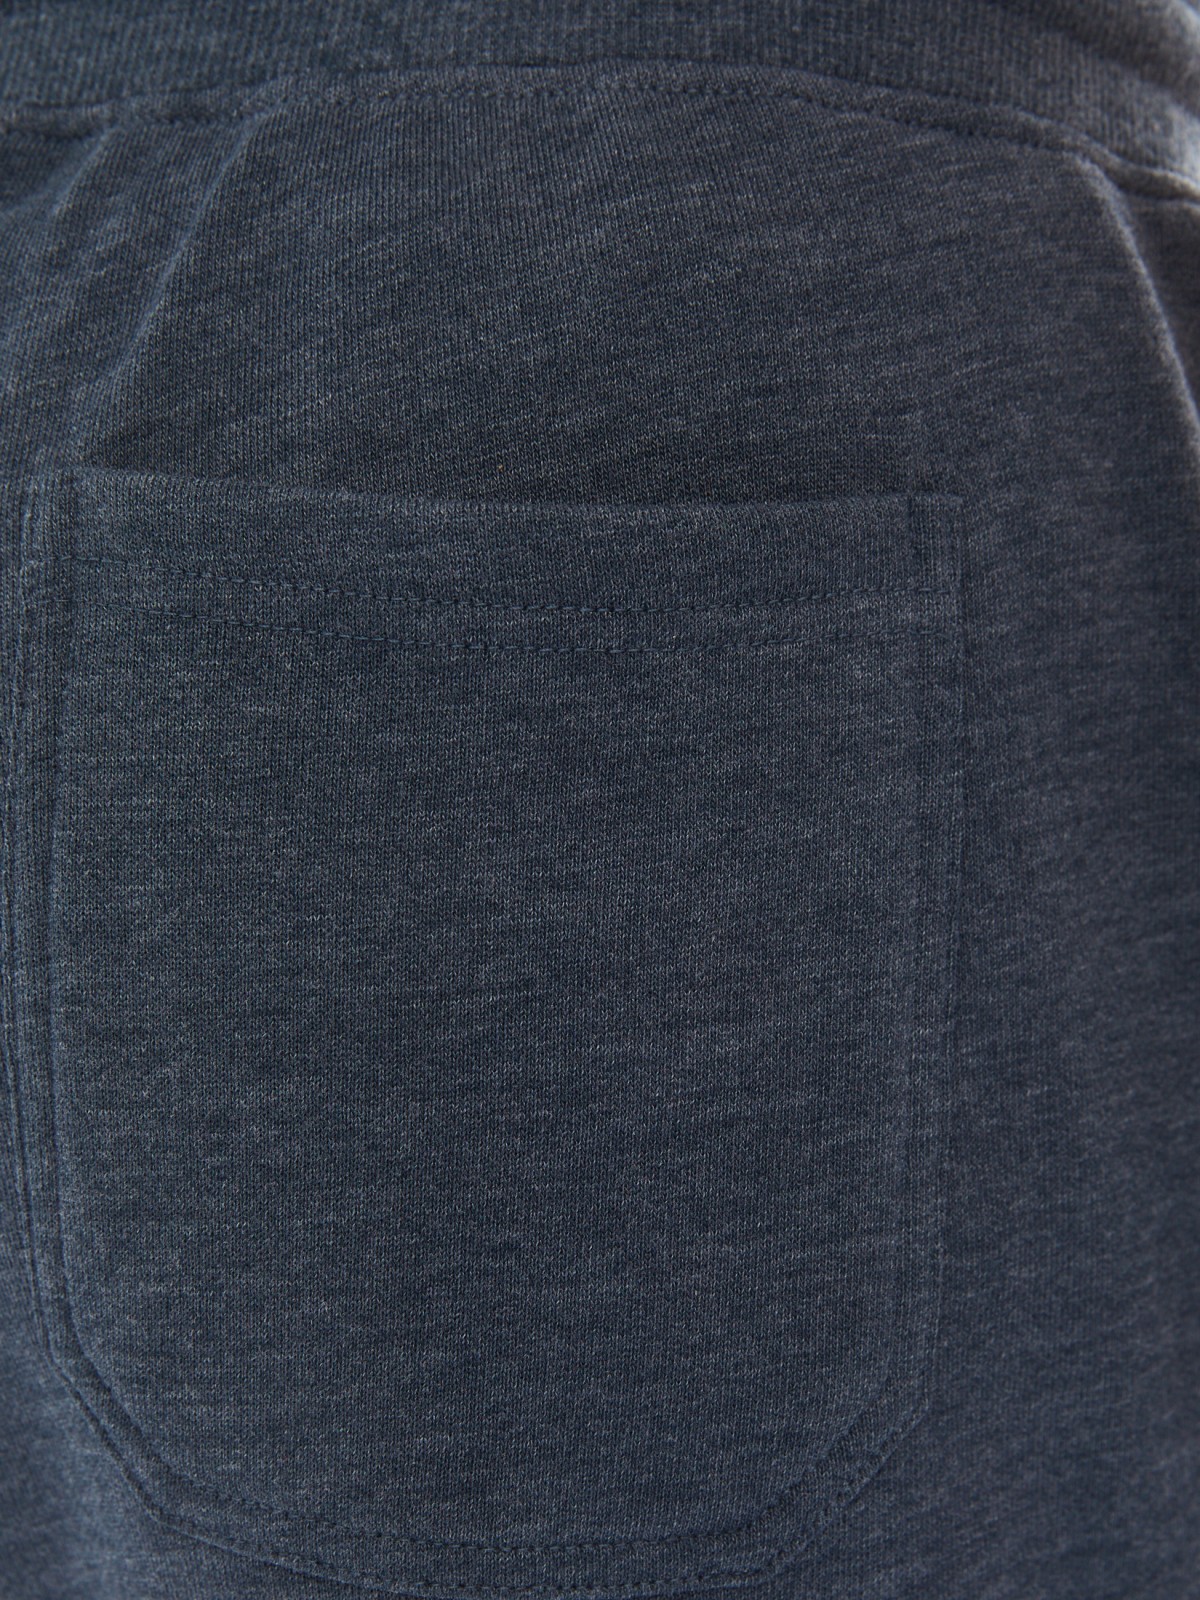 Трикотажные брюки-джоггеры в спортивном стиле zolla 014137675082, цвет темно-бирюзовый, размер M - фото 6